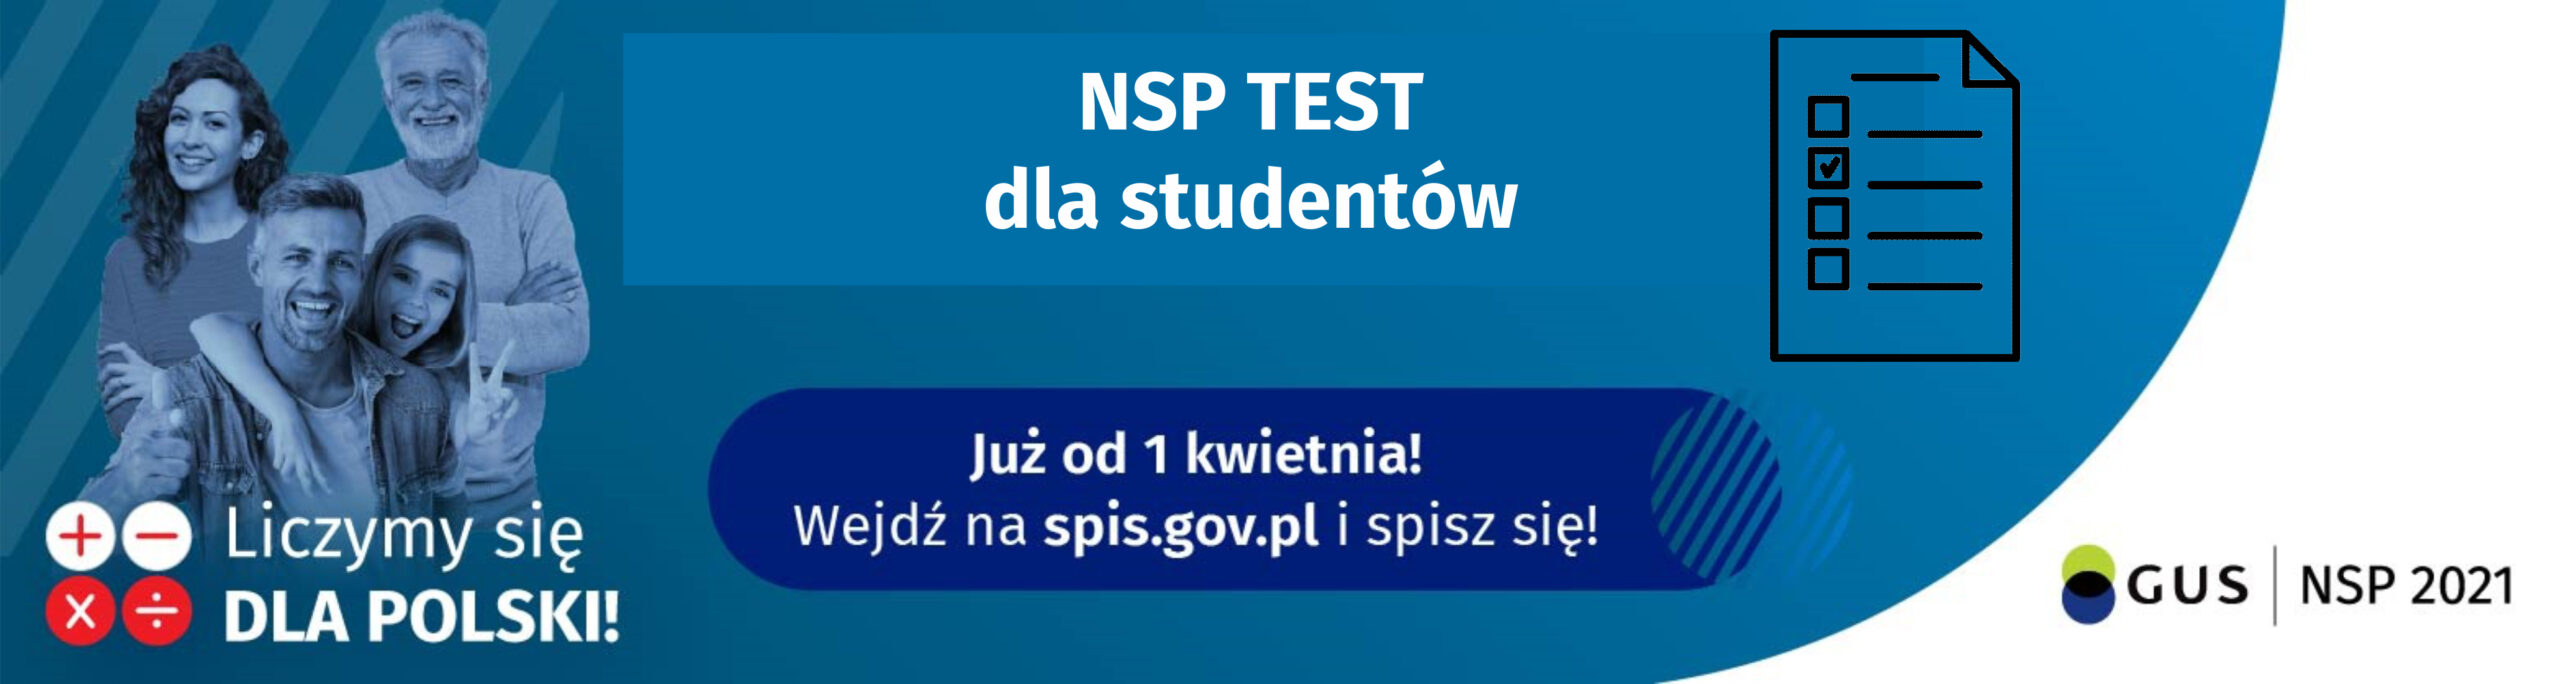 Konkurs NSP Test Student – test wiedzy o Narodowym Spisie Powszechnym 2021 dla studentów szkół wyższych